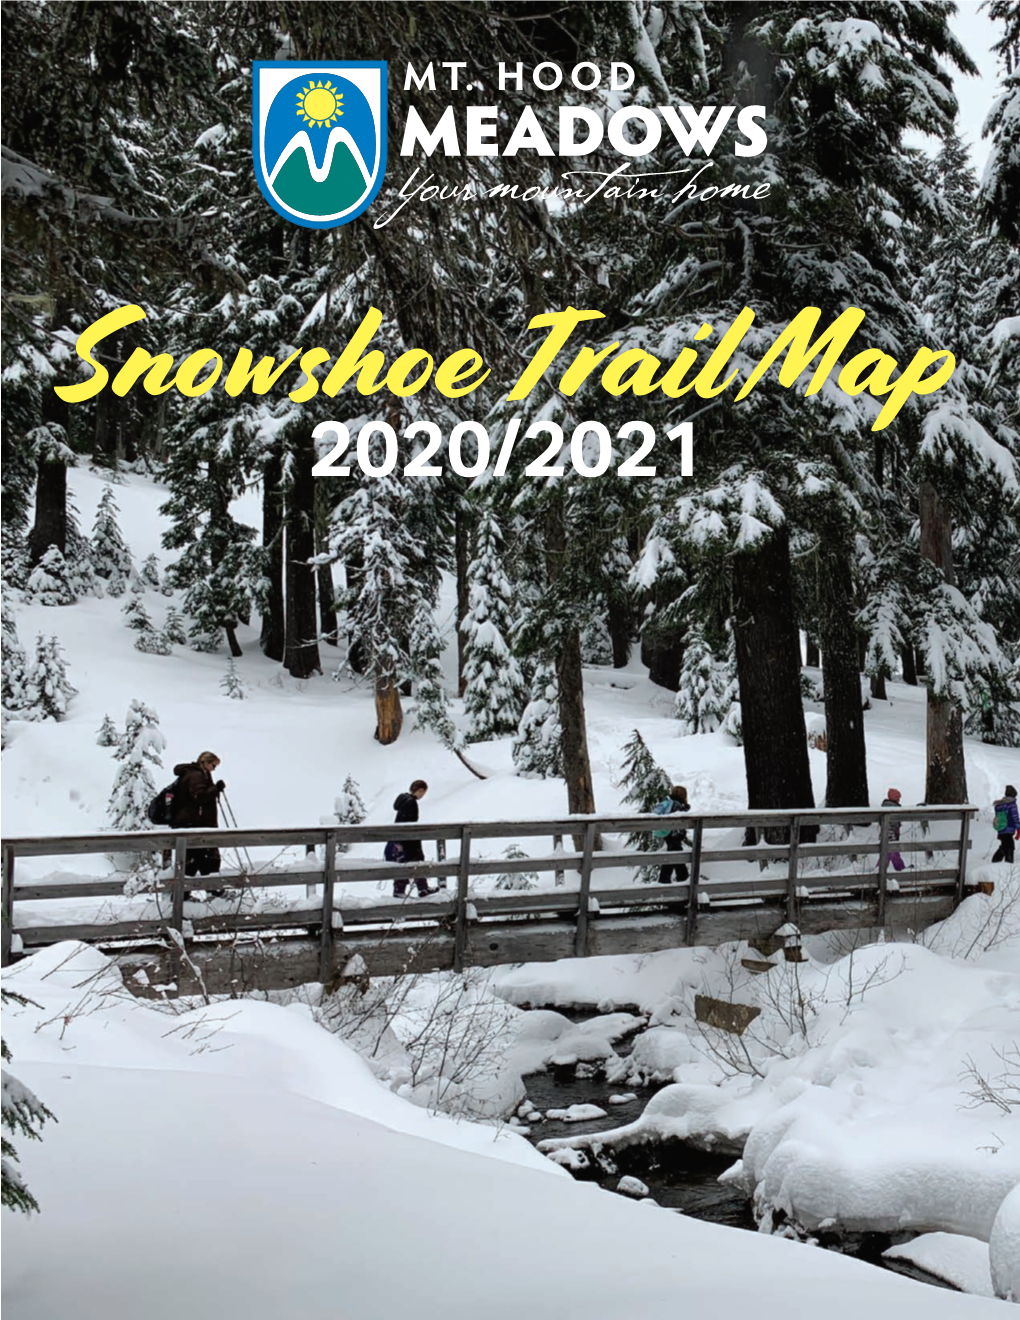 Snowshoe Trail Map 2020/2021 Snowshoe at Mt